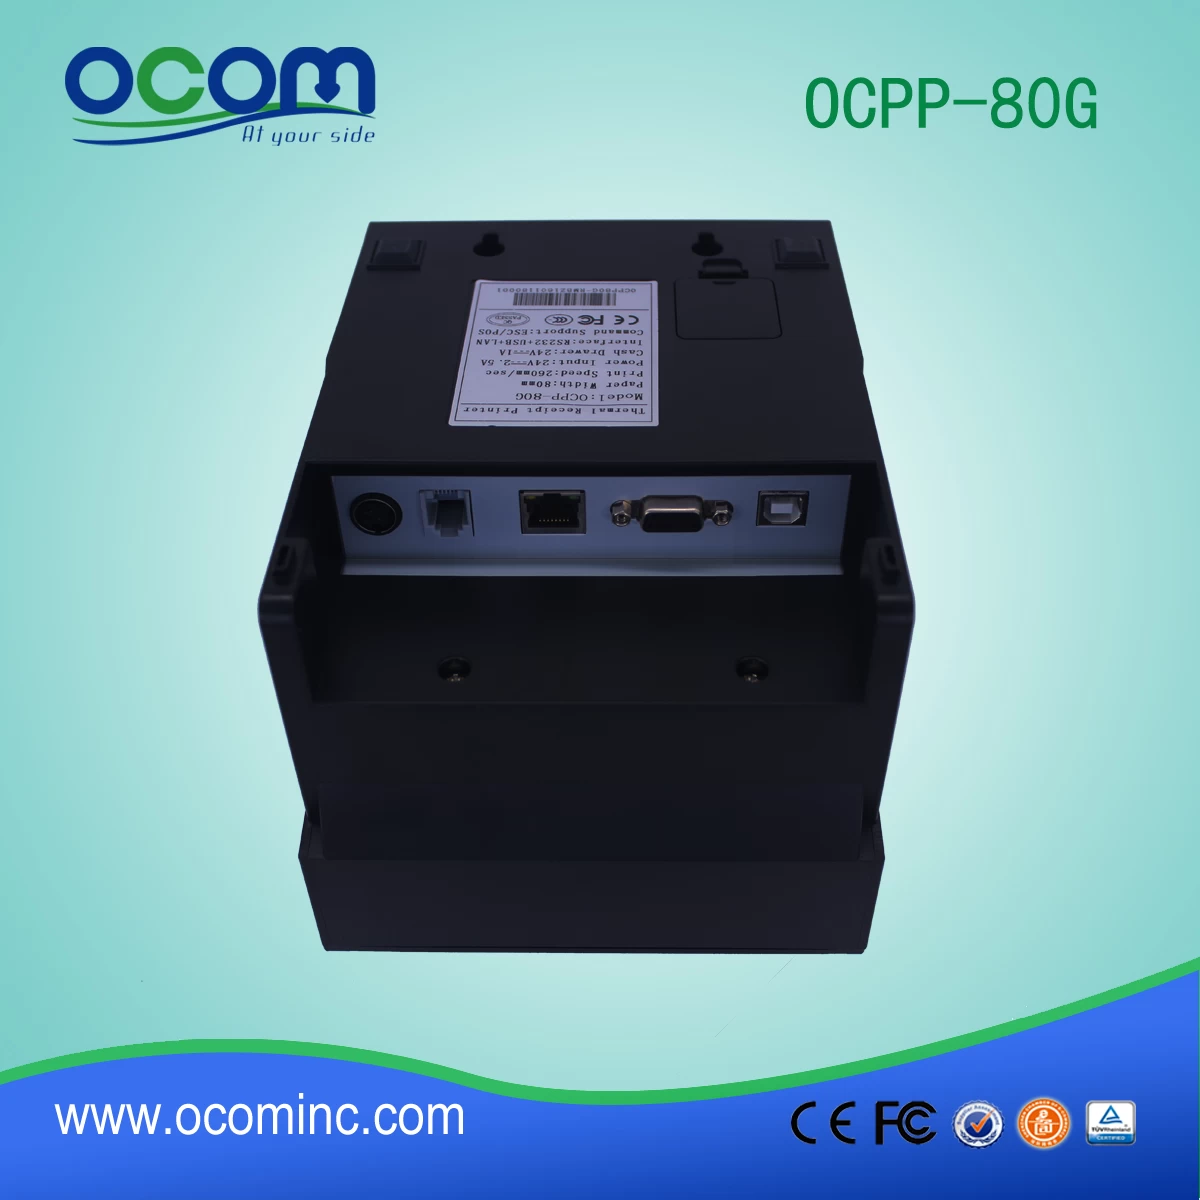 usb serial lan pos receipt printer price (OCPP-80G)